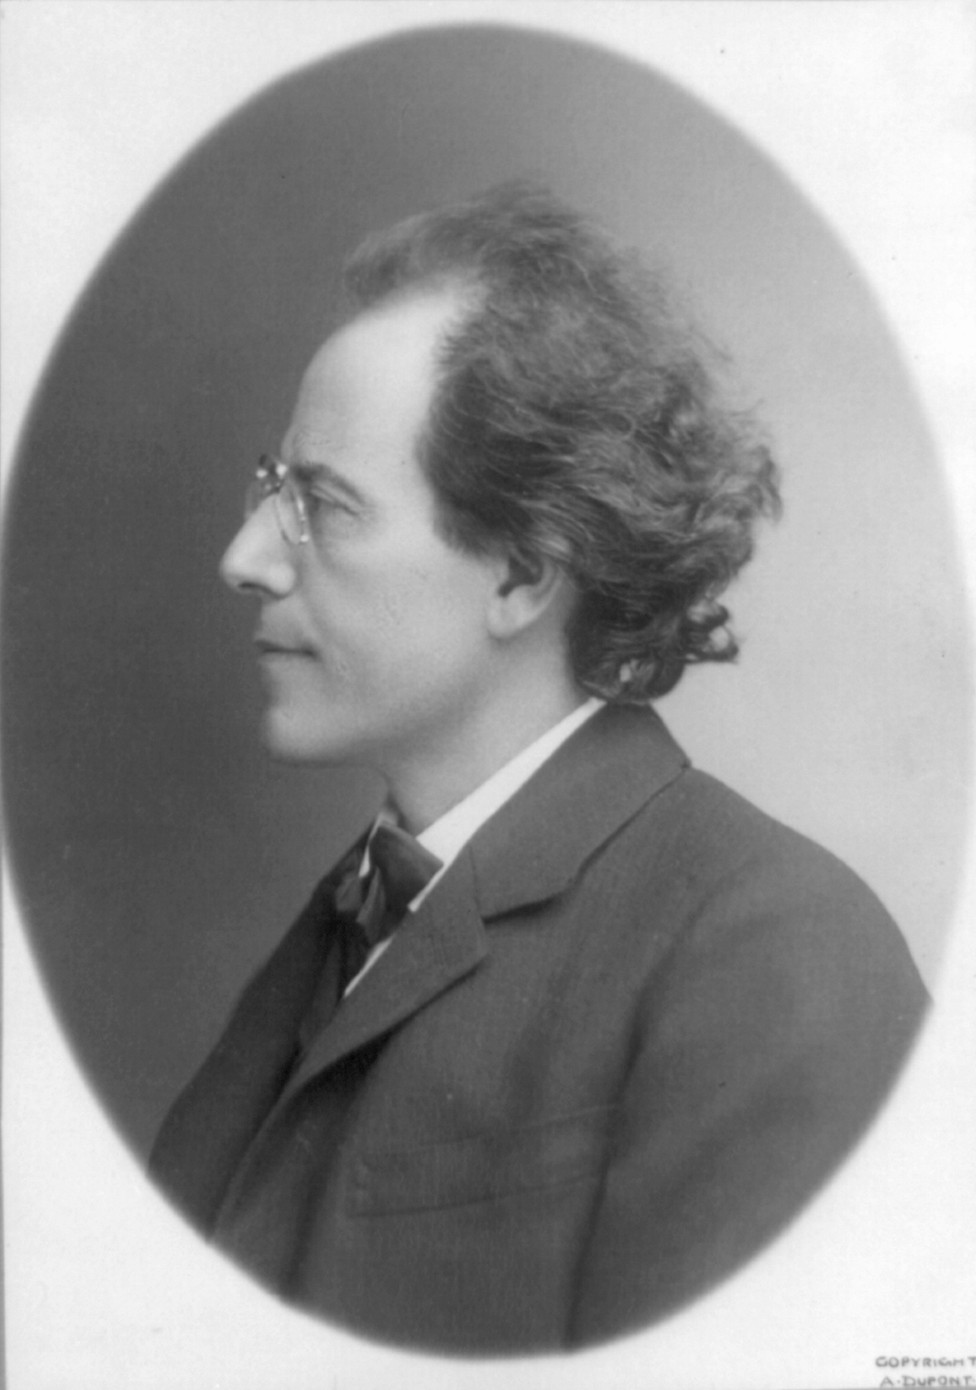 Gustav Mahler Wallpapers